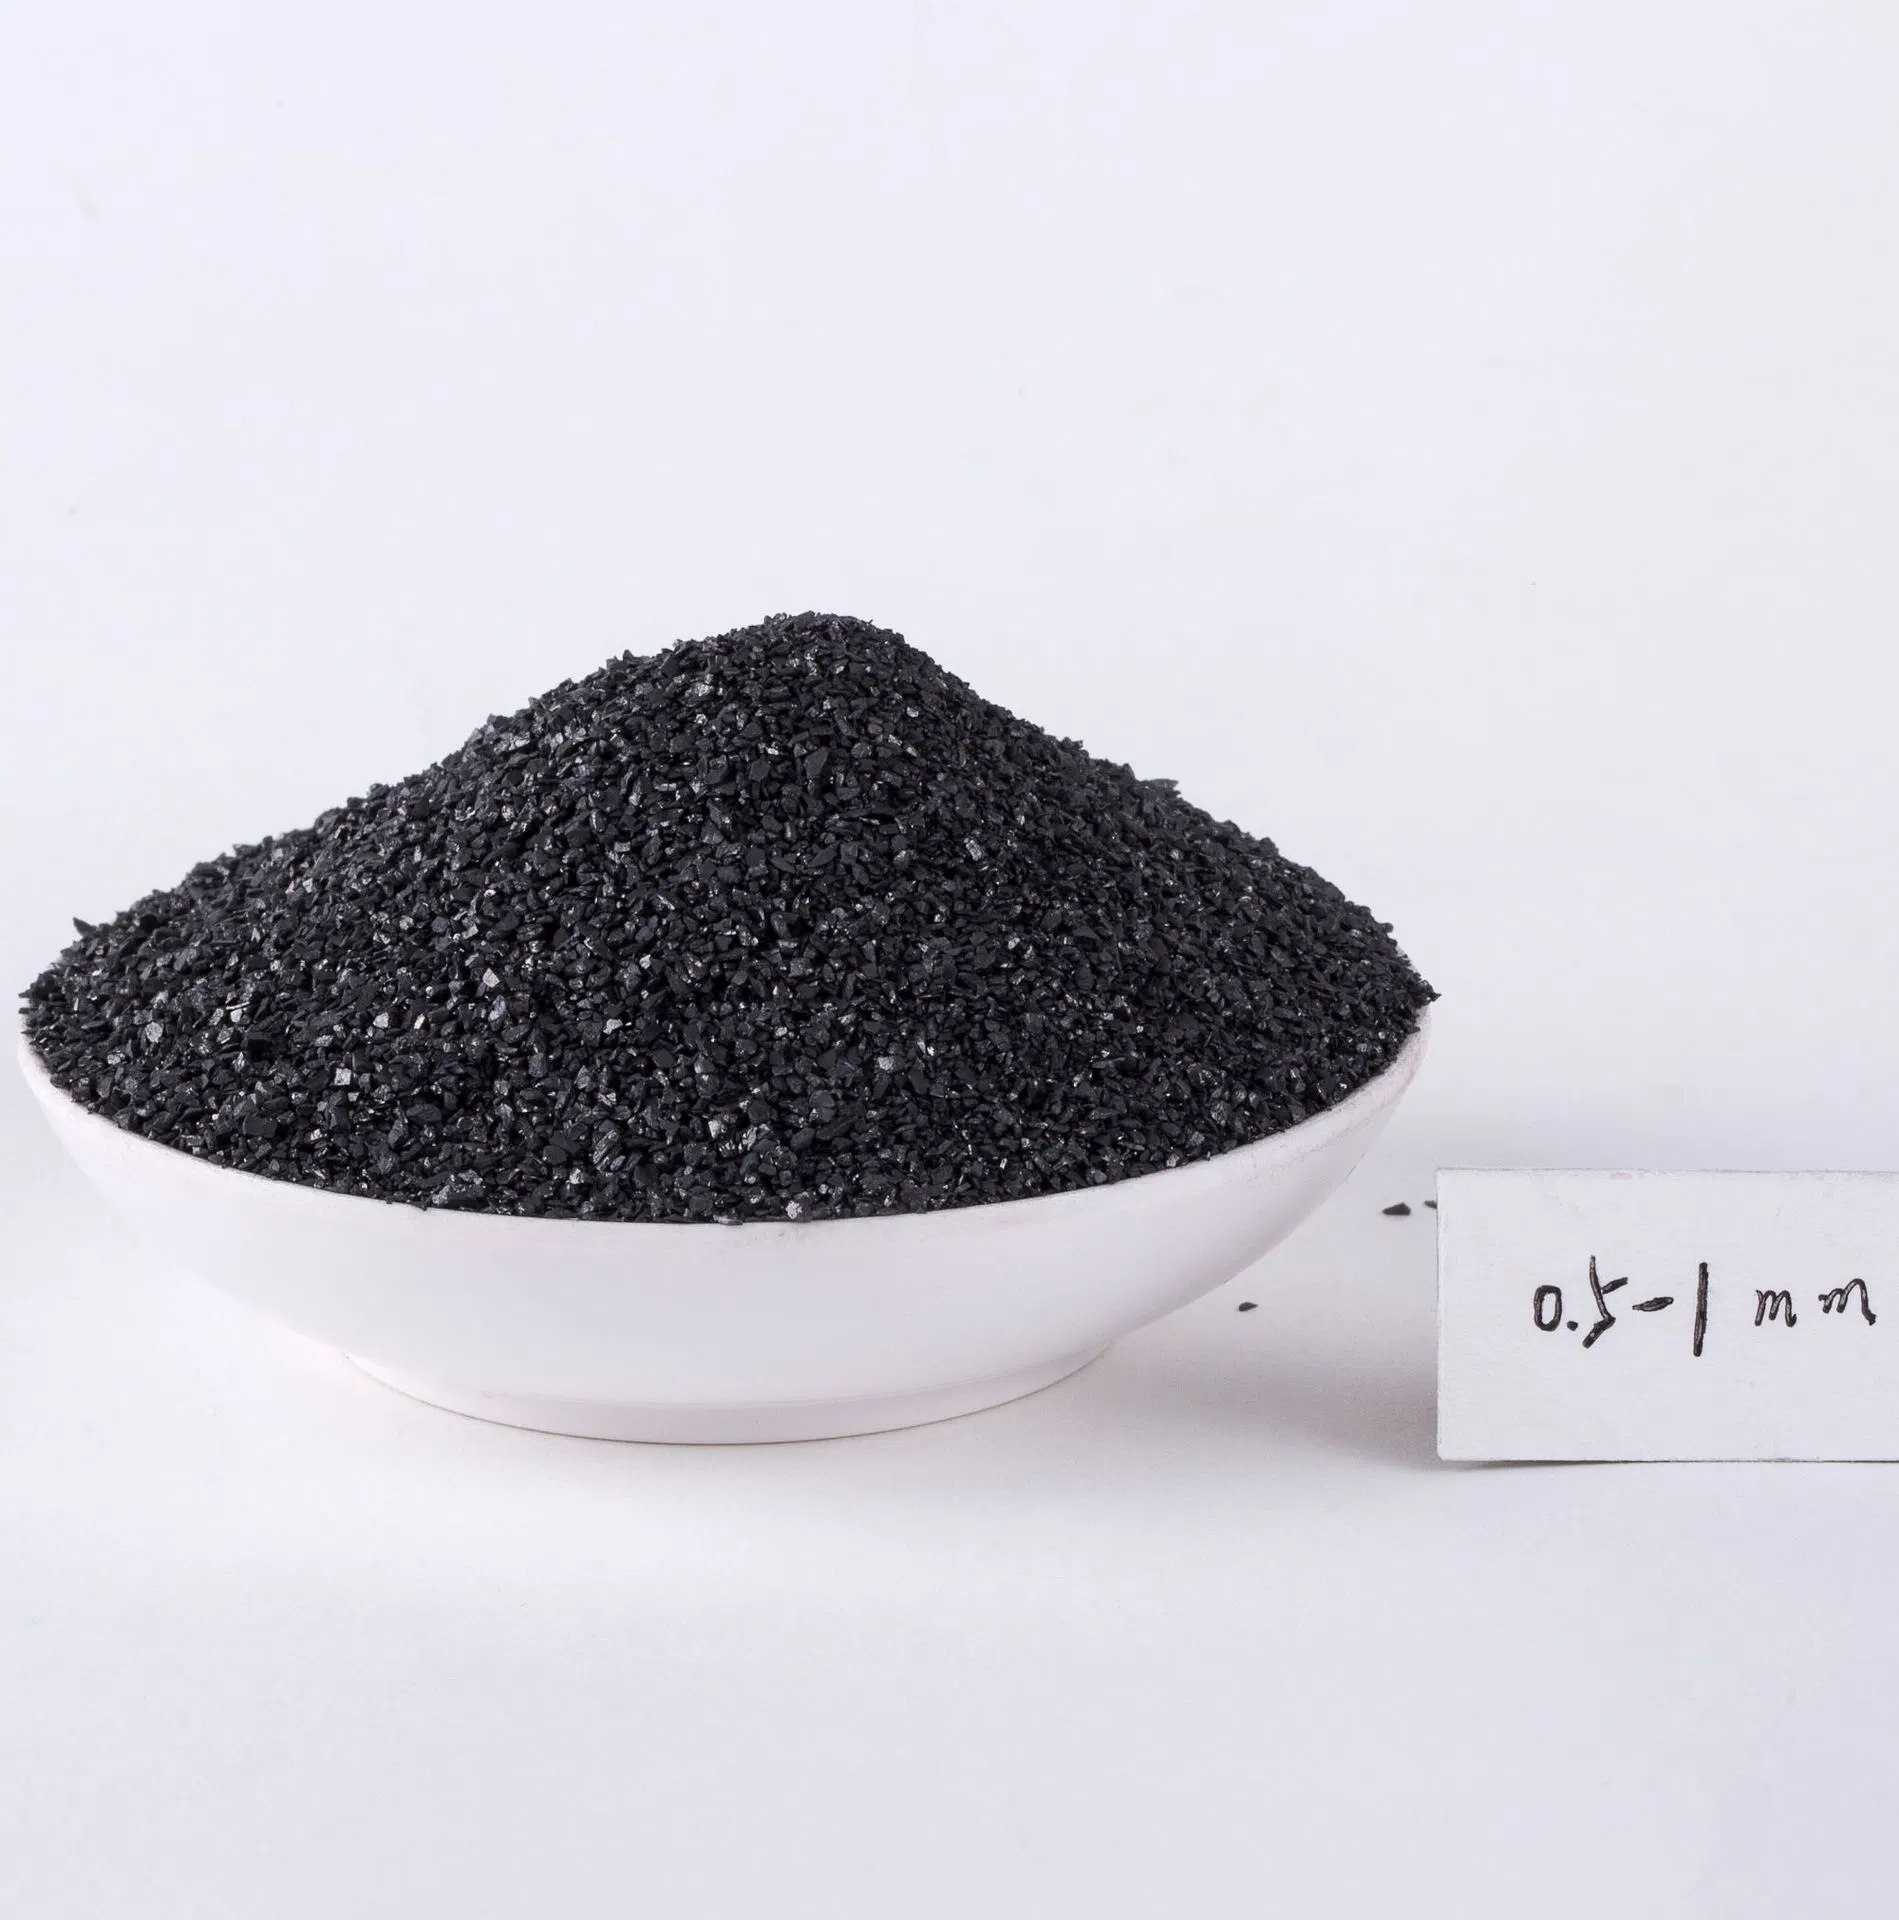 مبيعات مباشرة للفحم الأسود اللامع تملأ ارتفاع الفحم الأسود الكربون الفحم الصب الفحم أنثراسيت الفحم مسحوق